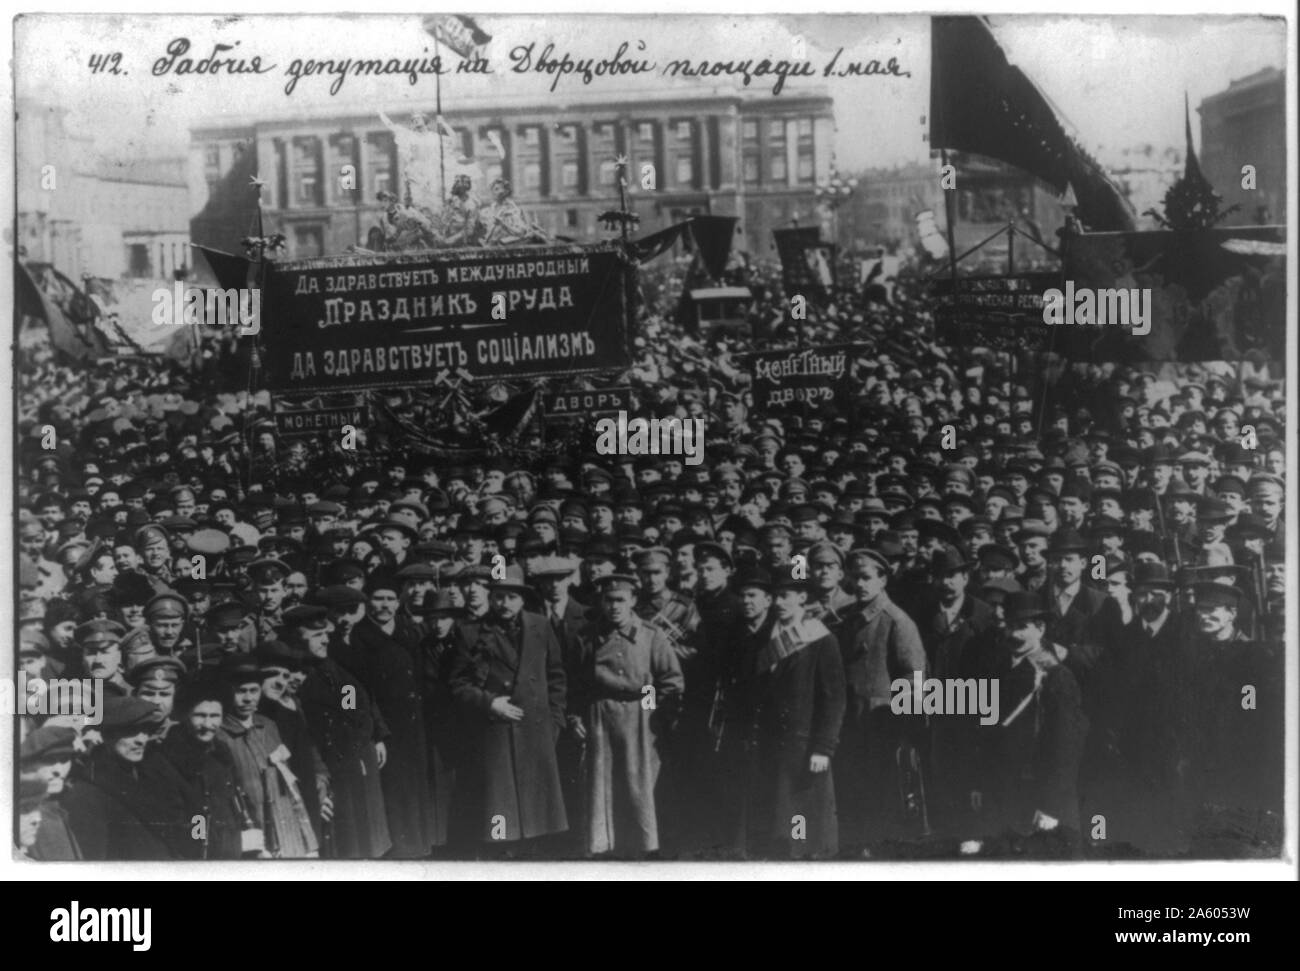 Die Russische Revolution Arbeiter deputation auf dem Dvortsovyi Square, Petrograd. Die russische Revolution ist der Sammelbegriff für eine Reihe von Revolutionen in Russland im Jahr 1917, die die zaristische Autokratie demontiert und führte zur Gründung der Russischen SFSR. Stockfoto